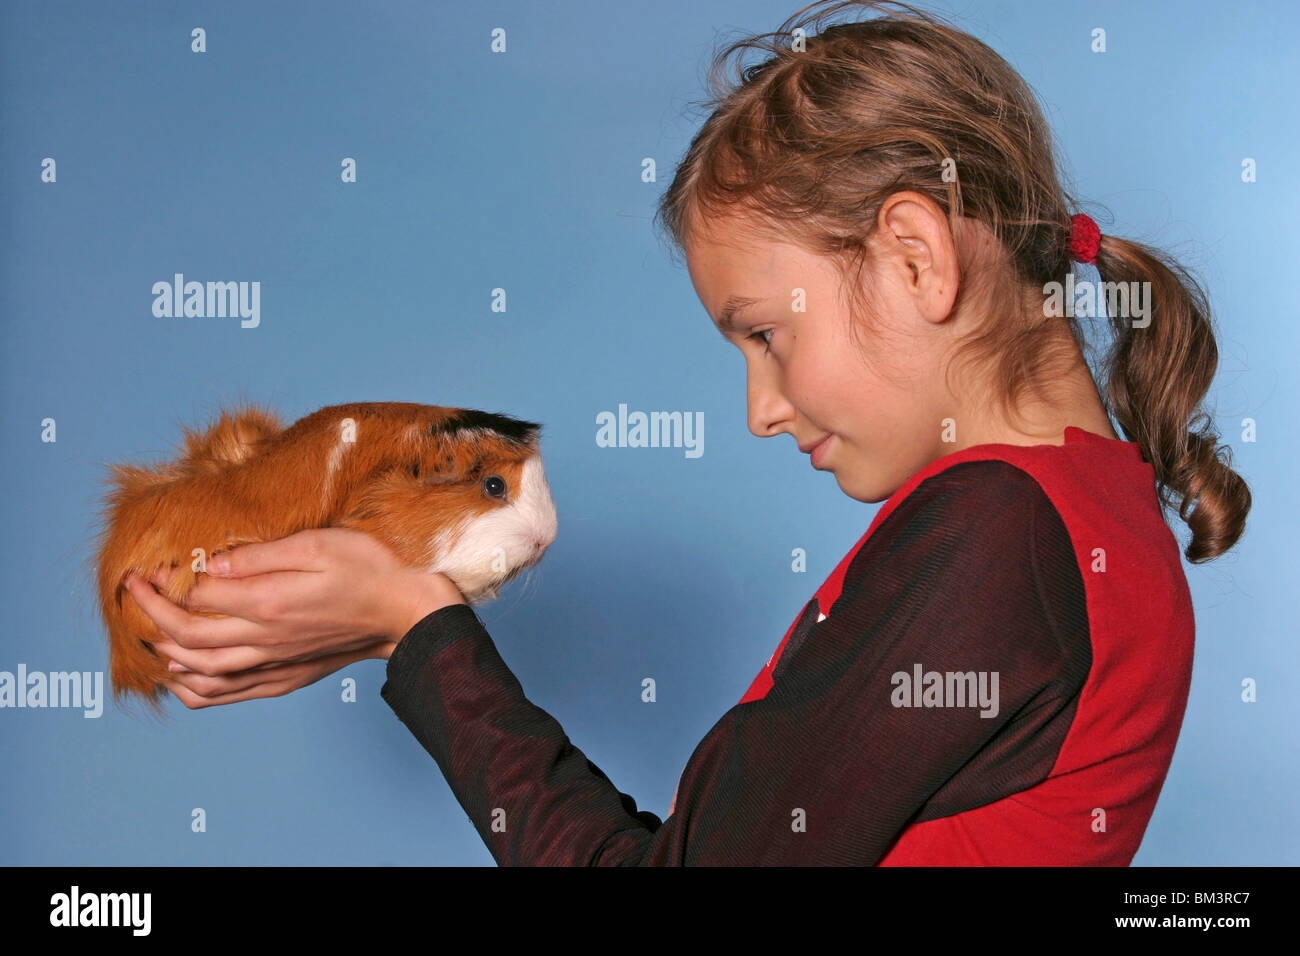 Meerschwein mit Kind / guinea pig & young girl Stock Photo